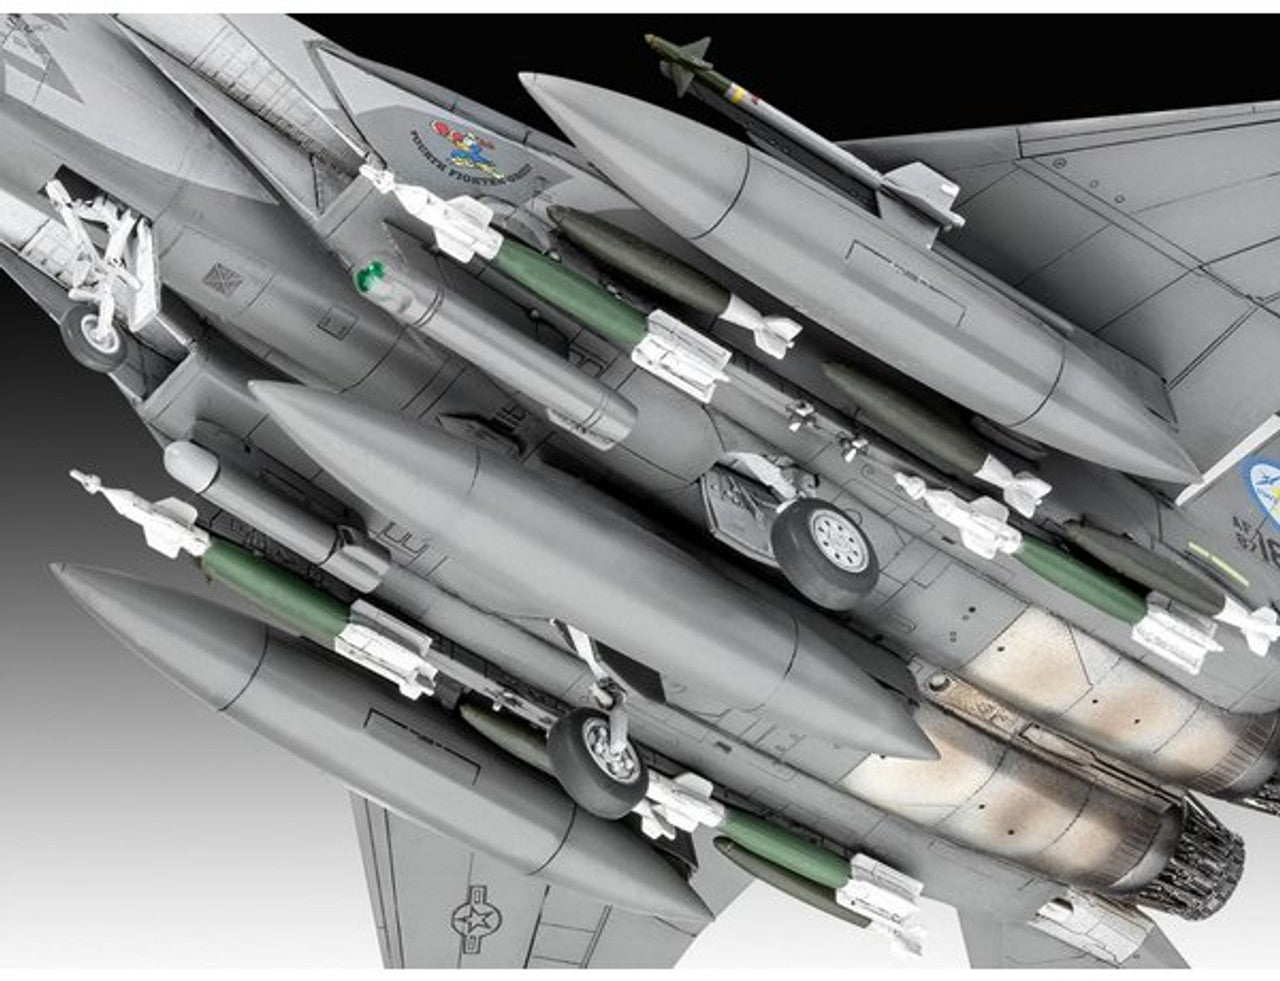 F-15E Strike Eagle (1:72) - Loaded Dice